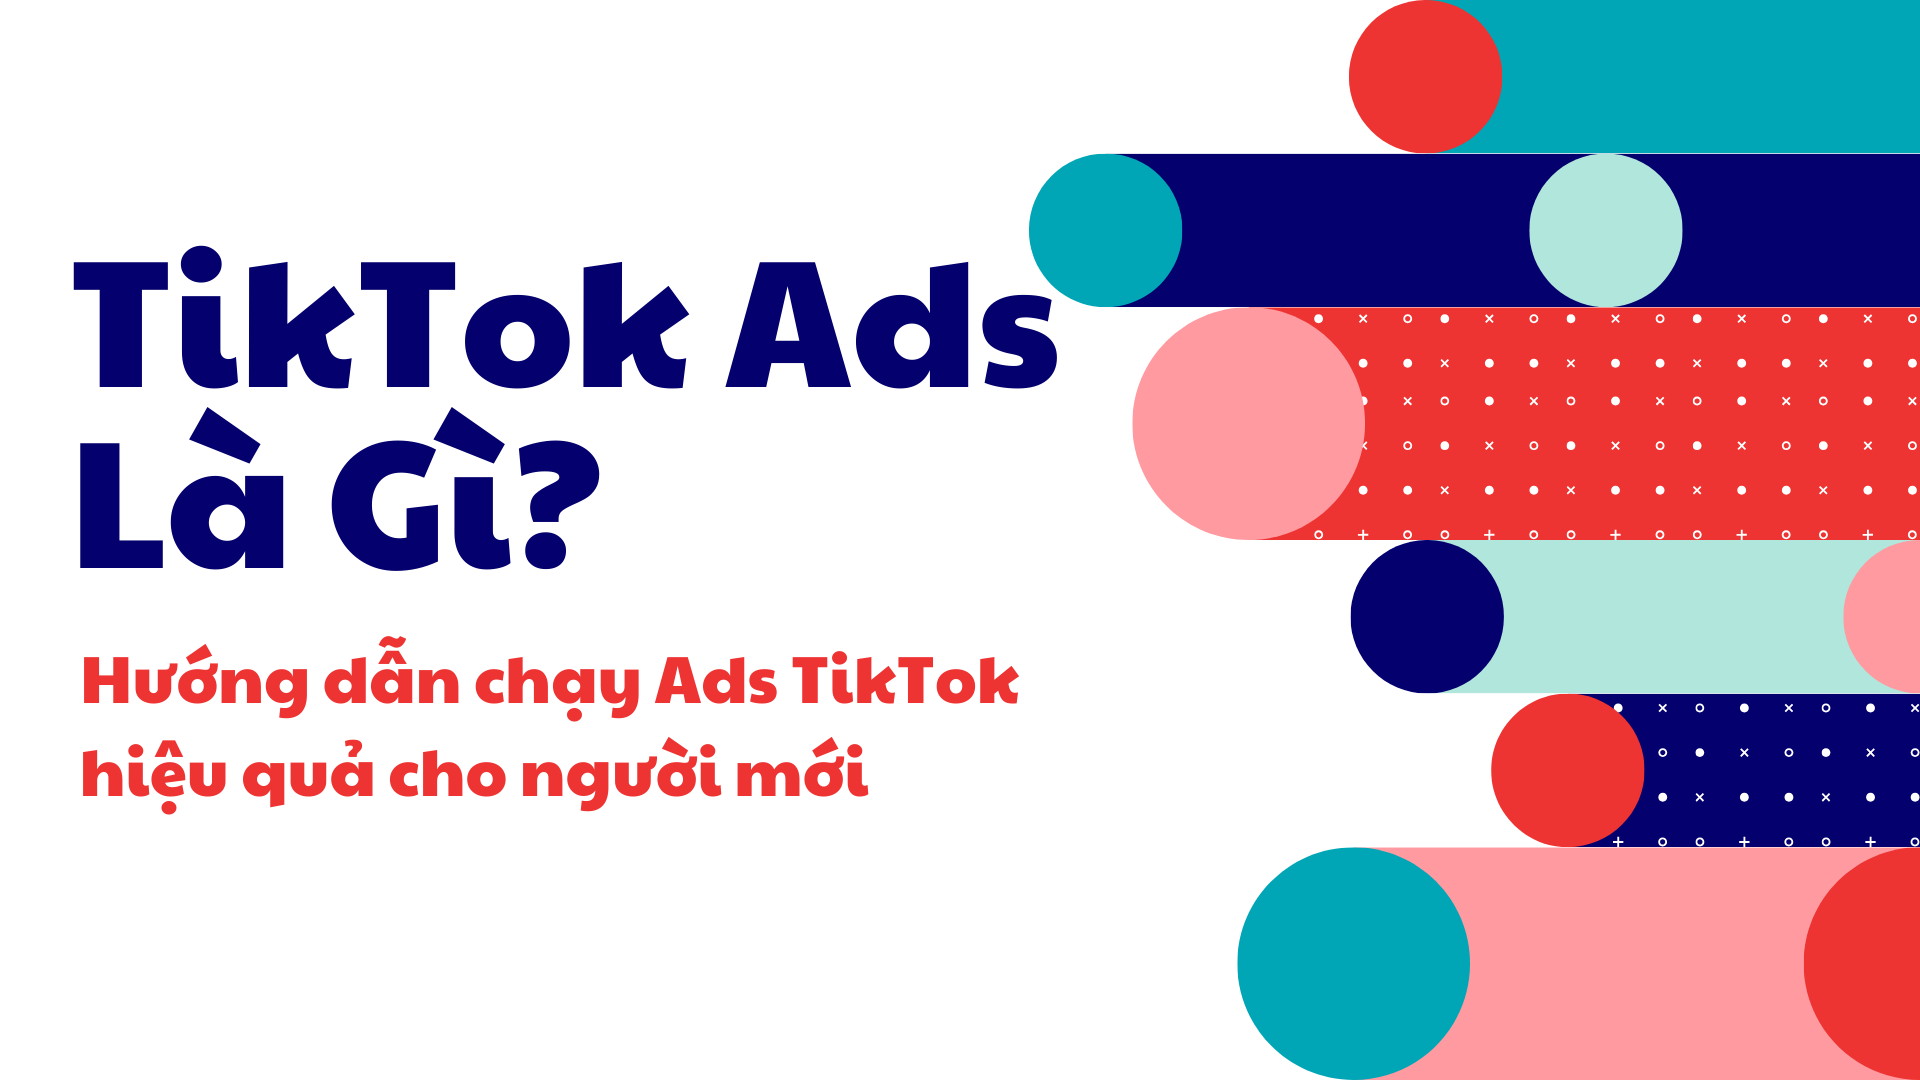 Mua proxy chạy quảng cáo TikTok có tốt không?